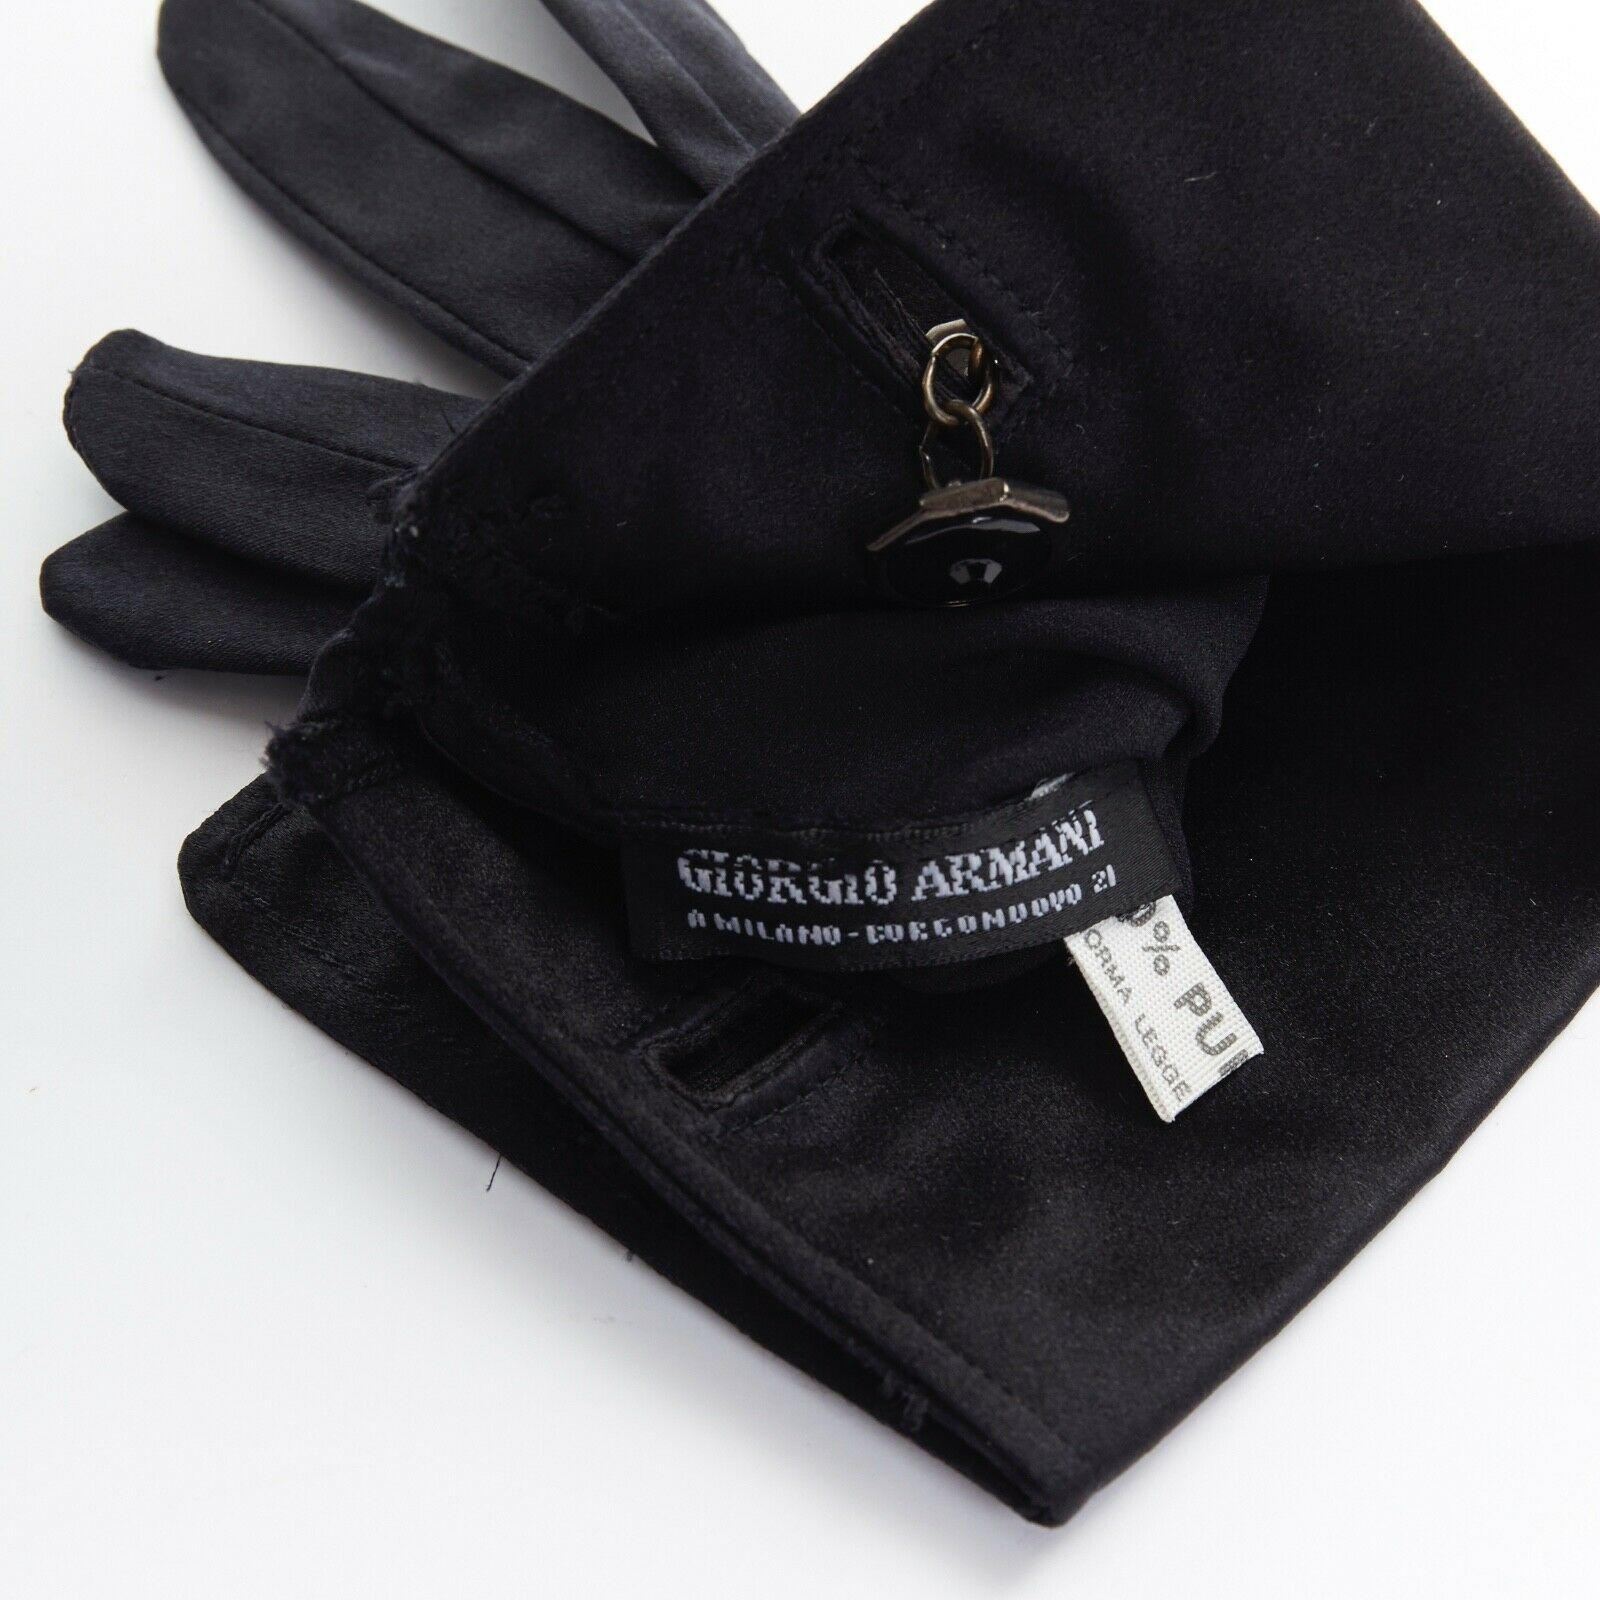 100% silk gloves